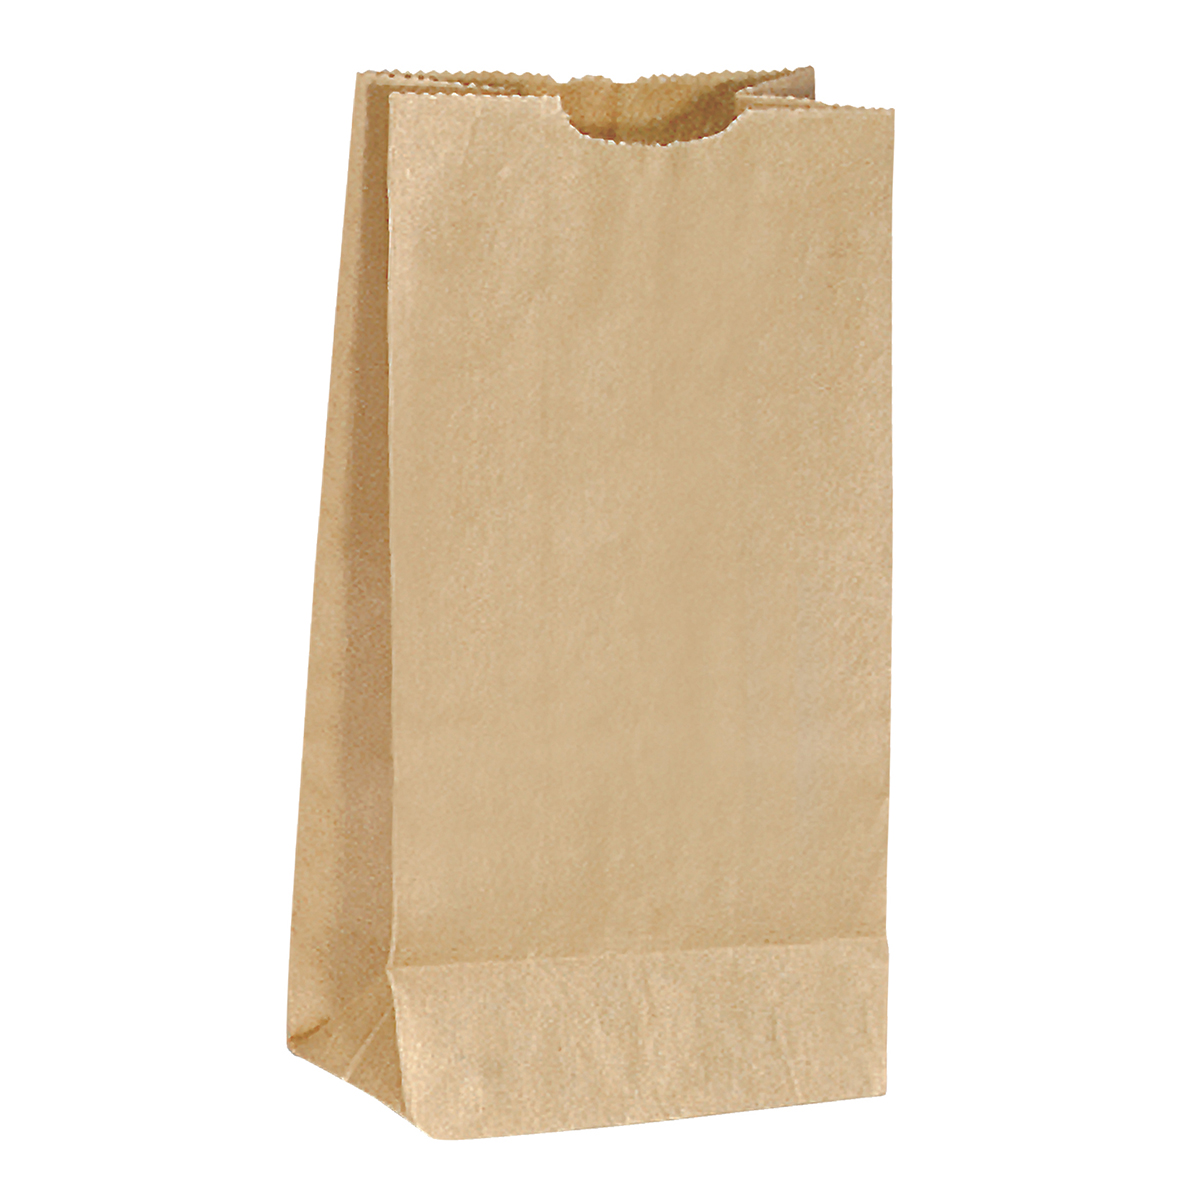 Brown Popcorn Bag